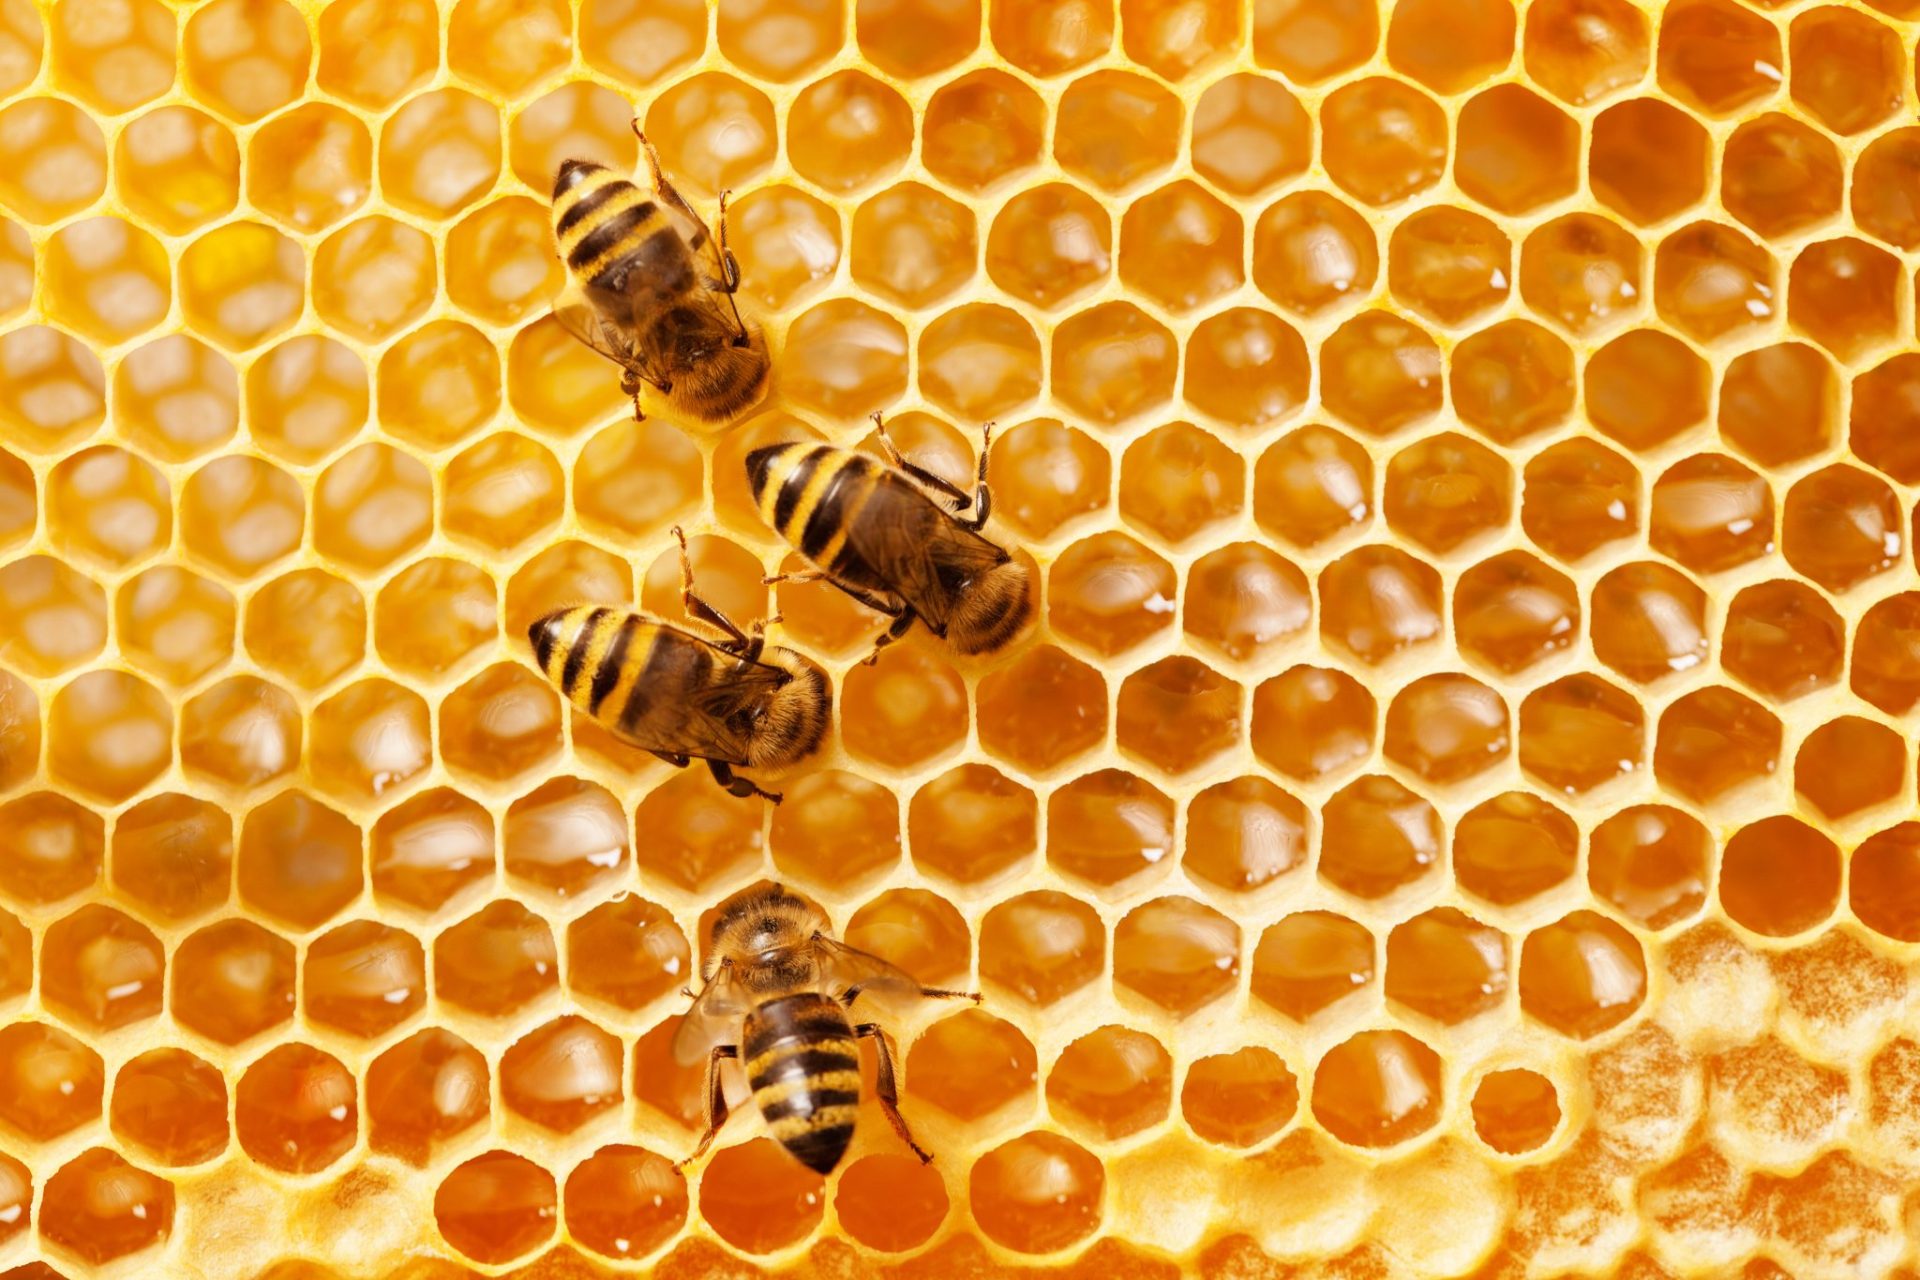 What Do Honeybees Eat